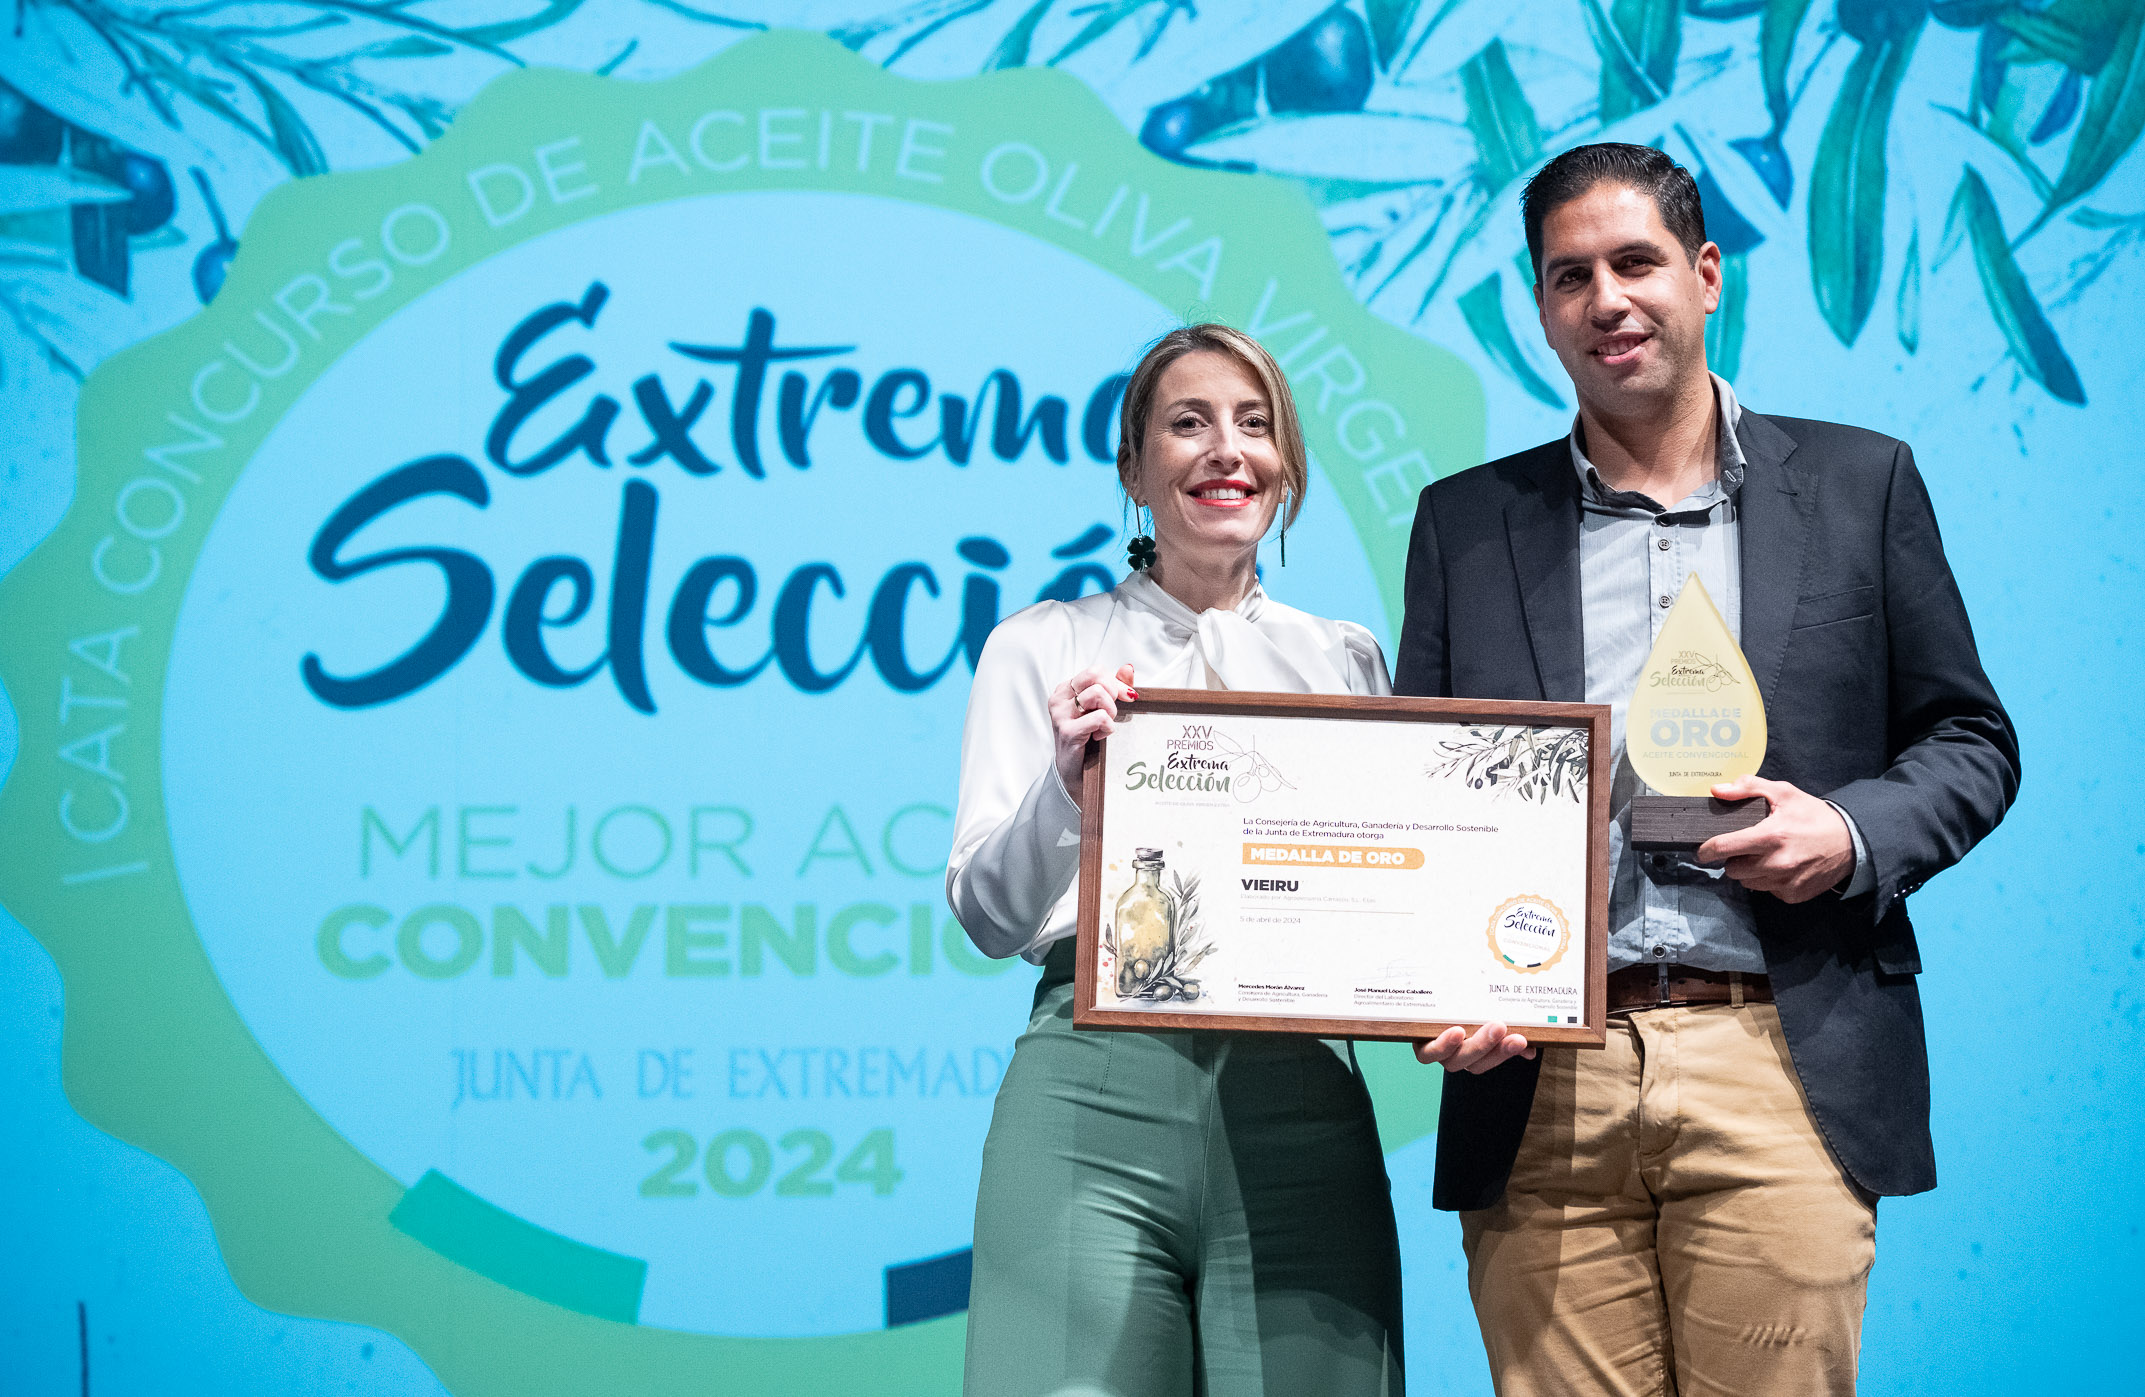 Ceremonia de entrega de los premios 'Extrema Selección' de Aceite de Oliva Virgen Extra AOVE